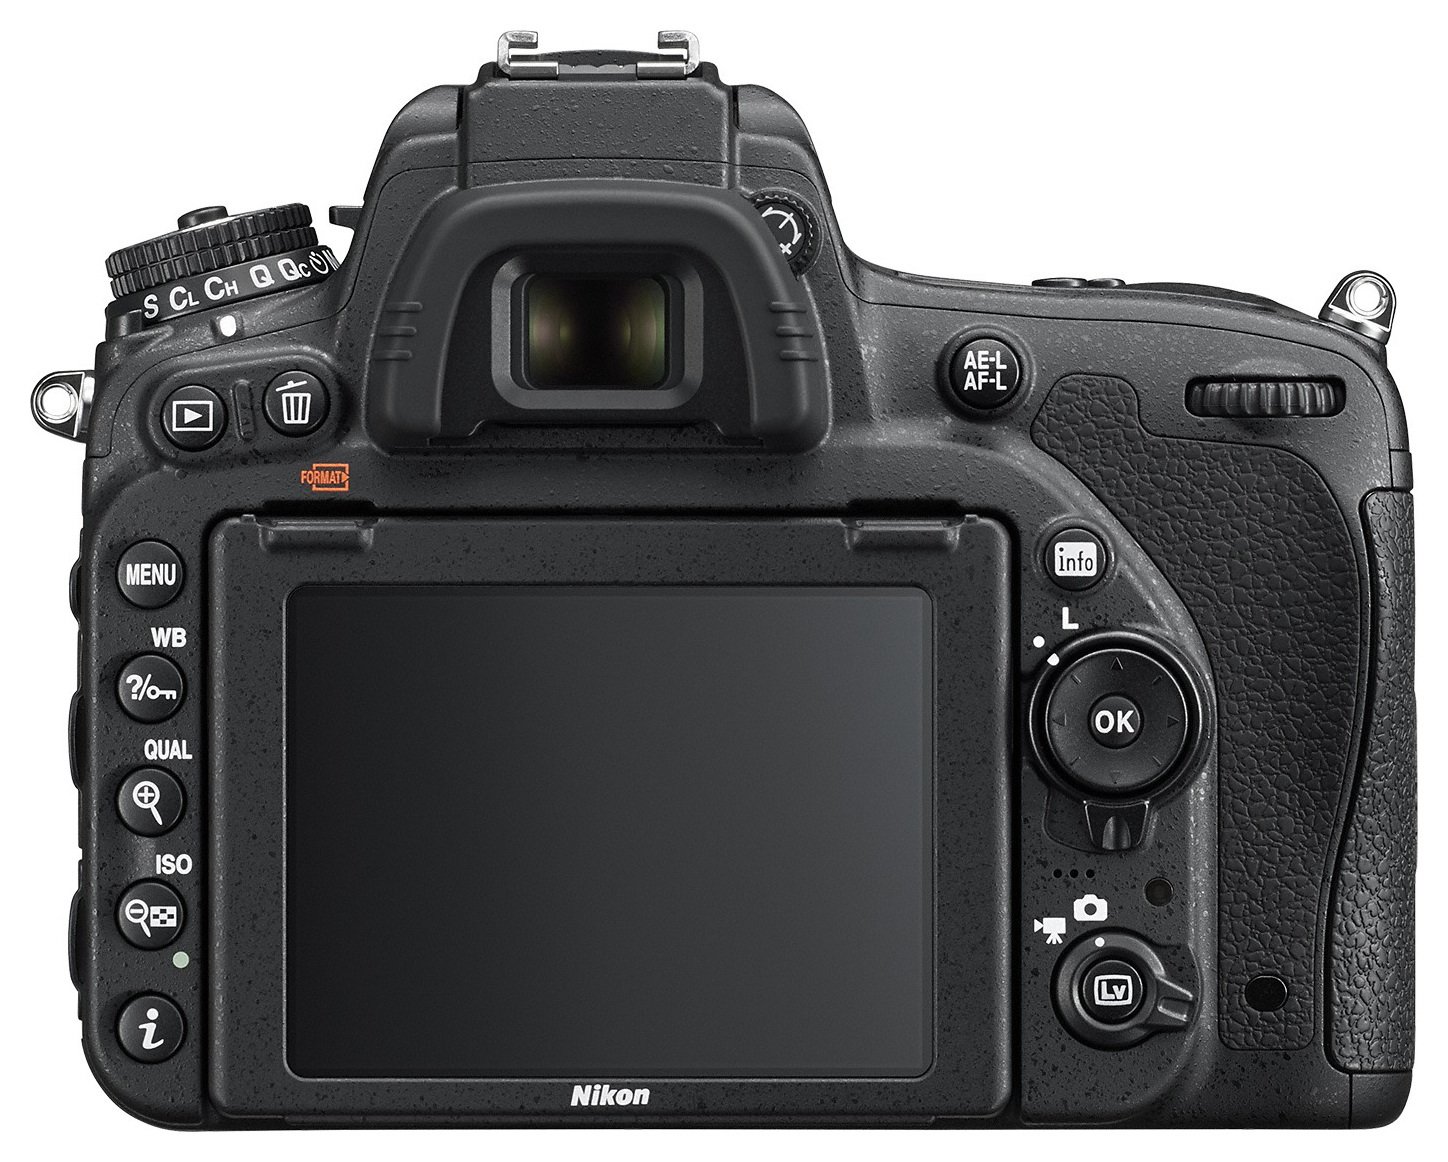 Nikon D750 DSLR Camera Body Review